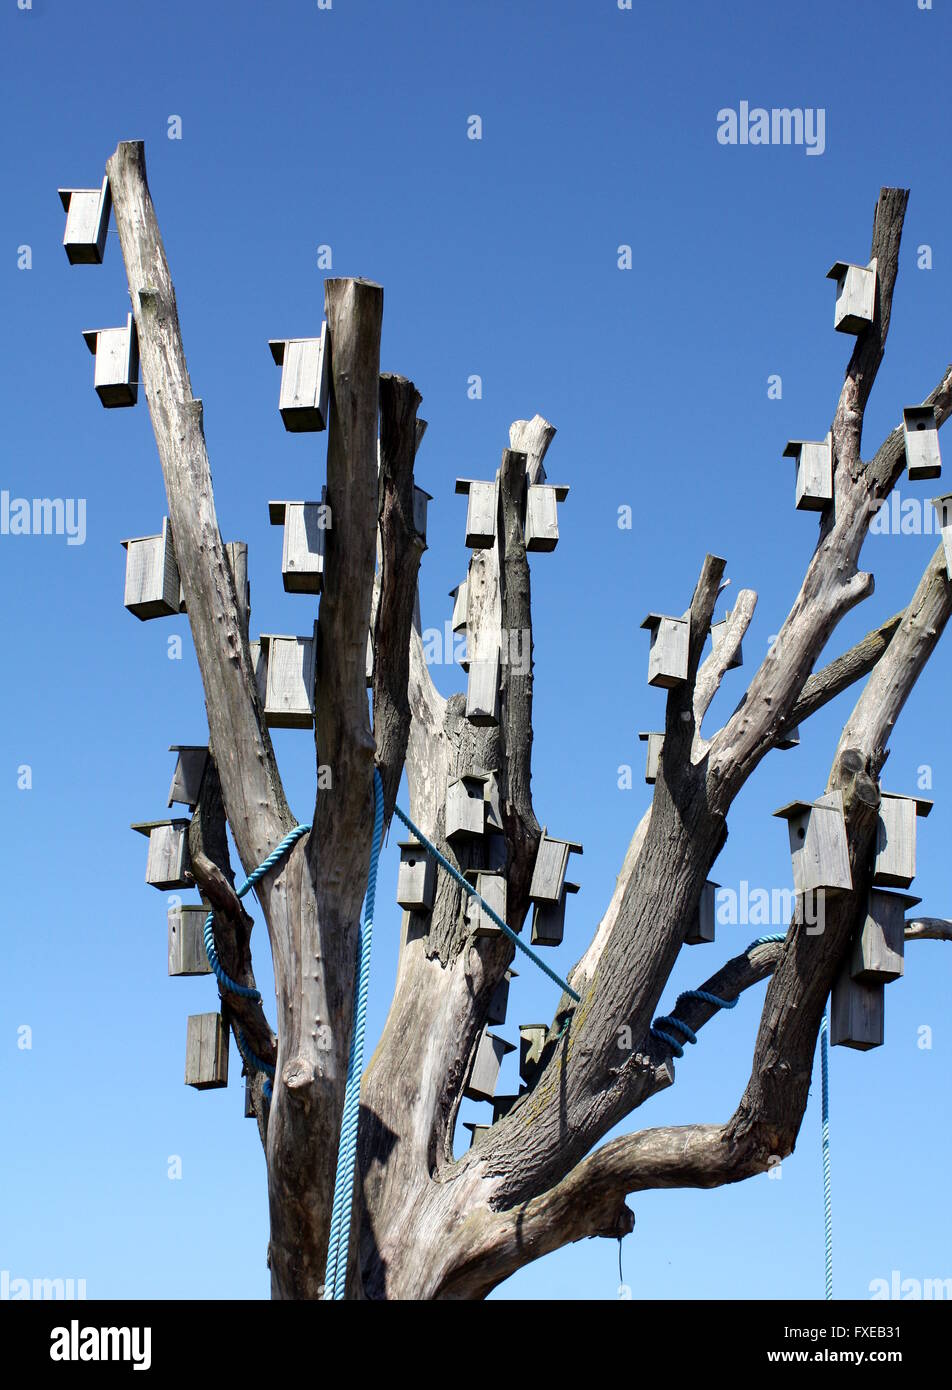 Des nichoirs sont accrochées sur les branches d'un arbre Banque D'Images